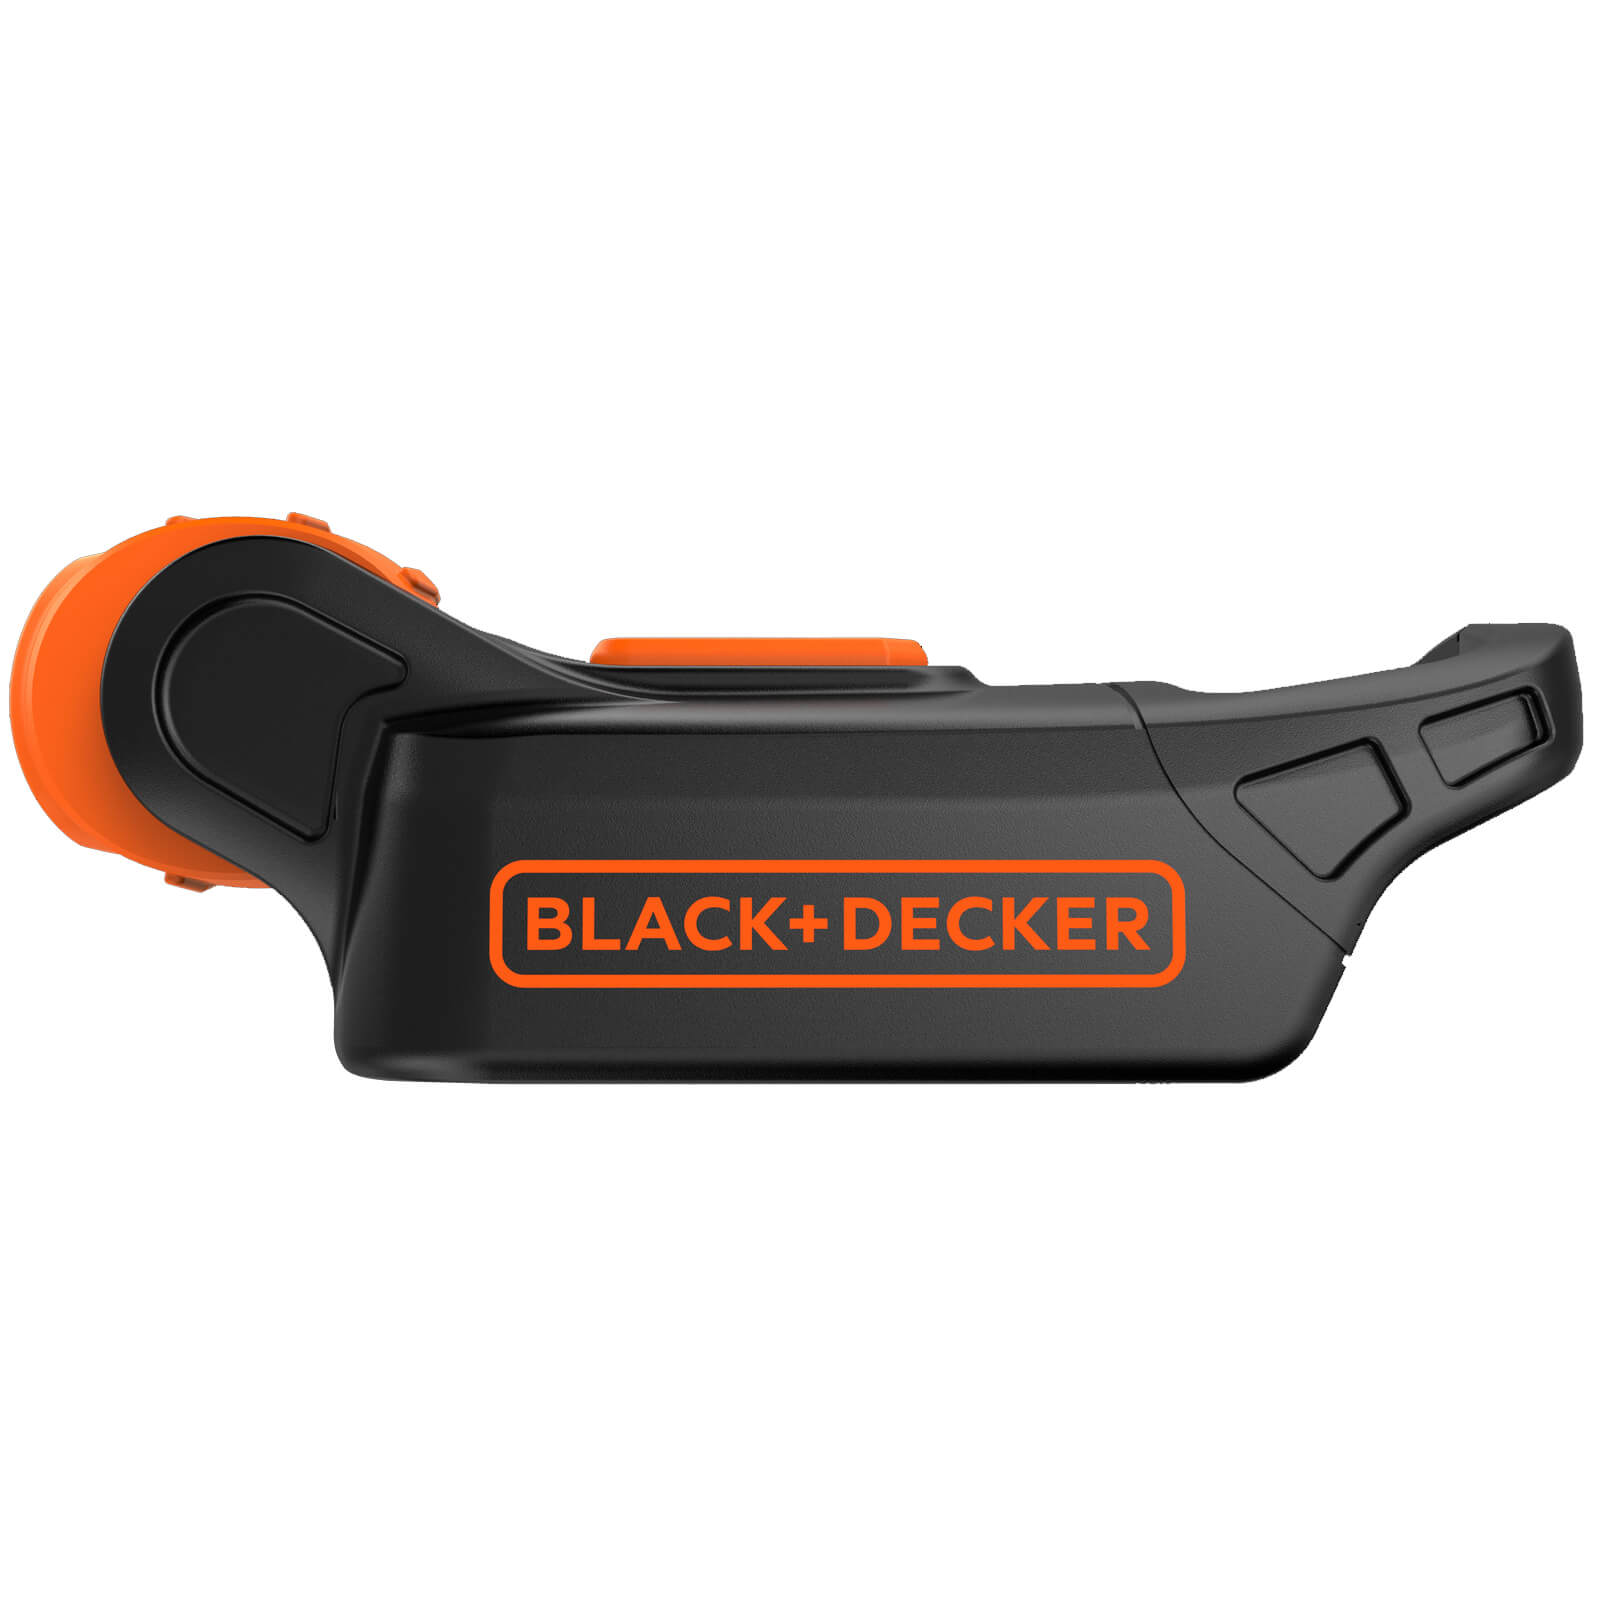 BLACK+DECKER 18V Cordless Flash Light (BDCCF18N-XJ)